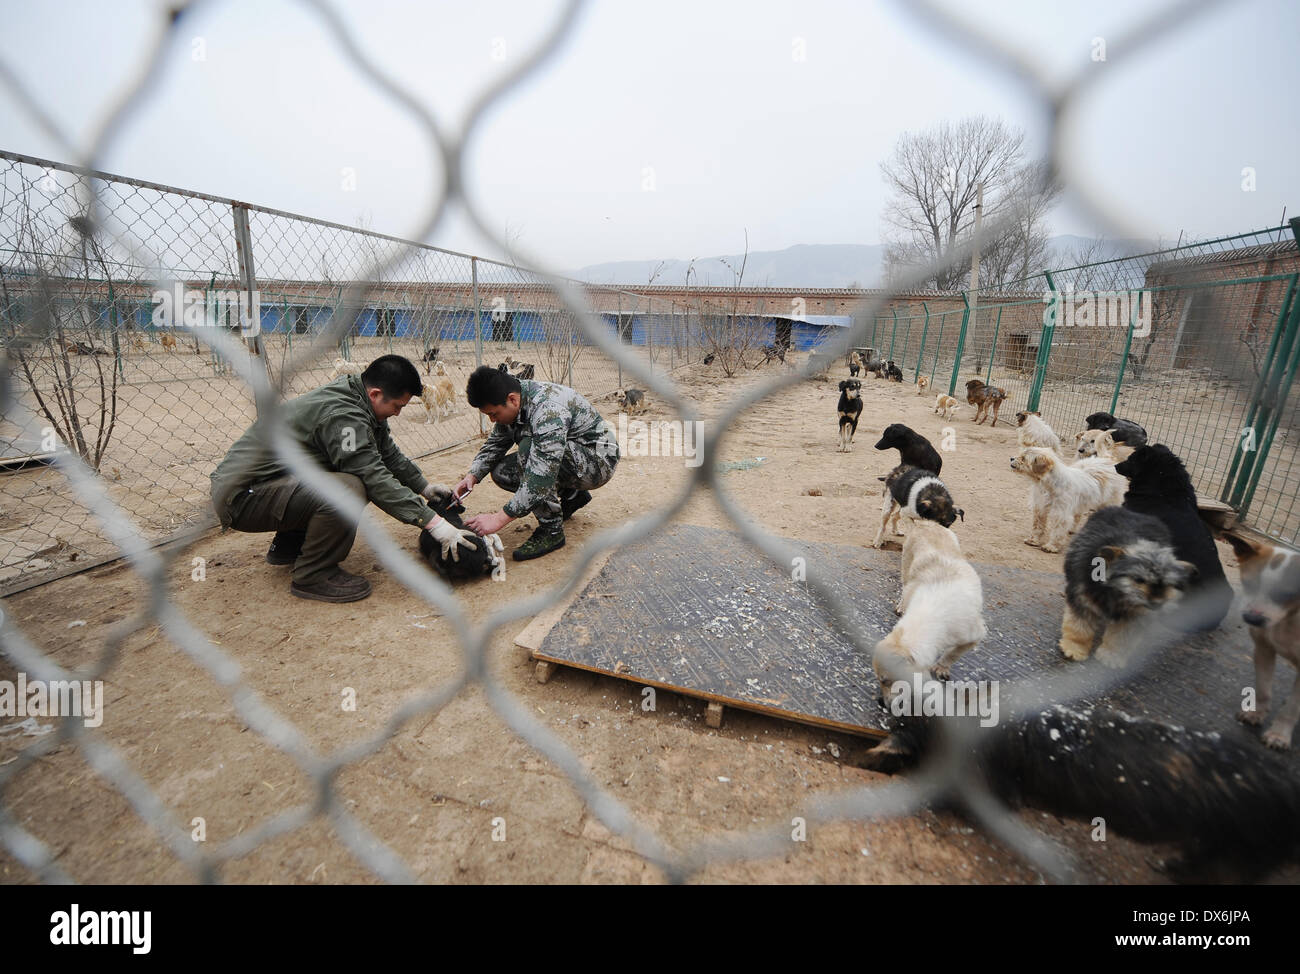 Taiyuan, China. 19. März 2014. Pflegenden geben eine Injektion mit einem Hund mit Hautkrankheiten in einem streunenden Hund Tierheim in Taiyuan, Hauptstadt der Provinz Nord-China Shanxi, 18. März 2014. Das Tierheim war Heimat für rund 300 Hunde streunen, als es von Hundeliebhabern im Jahr 2011 gegründet wurde. Jedoch ist es Schwierigkeiten, da die Anzahl der Streuner ständig auf dem Vormarsch ist. Bei weitem befinden sich mehr als 2.000 Hunde im Tierheim. Knappen Budgets für Gesundheit Pflege, Bacterin und Katzenfutter sind Druck auf die Besitzer, eine Lösung zu finden. Bildnachweis: Xinhua/Alamy Live-Nachrichten Stockfoto